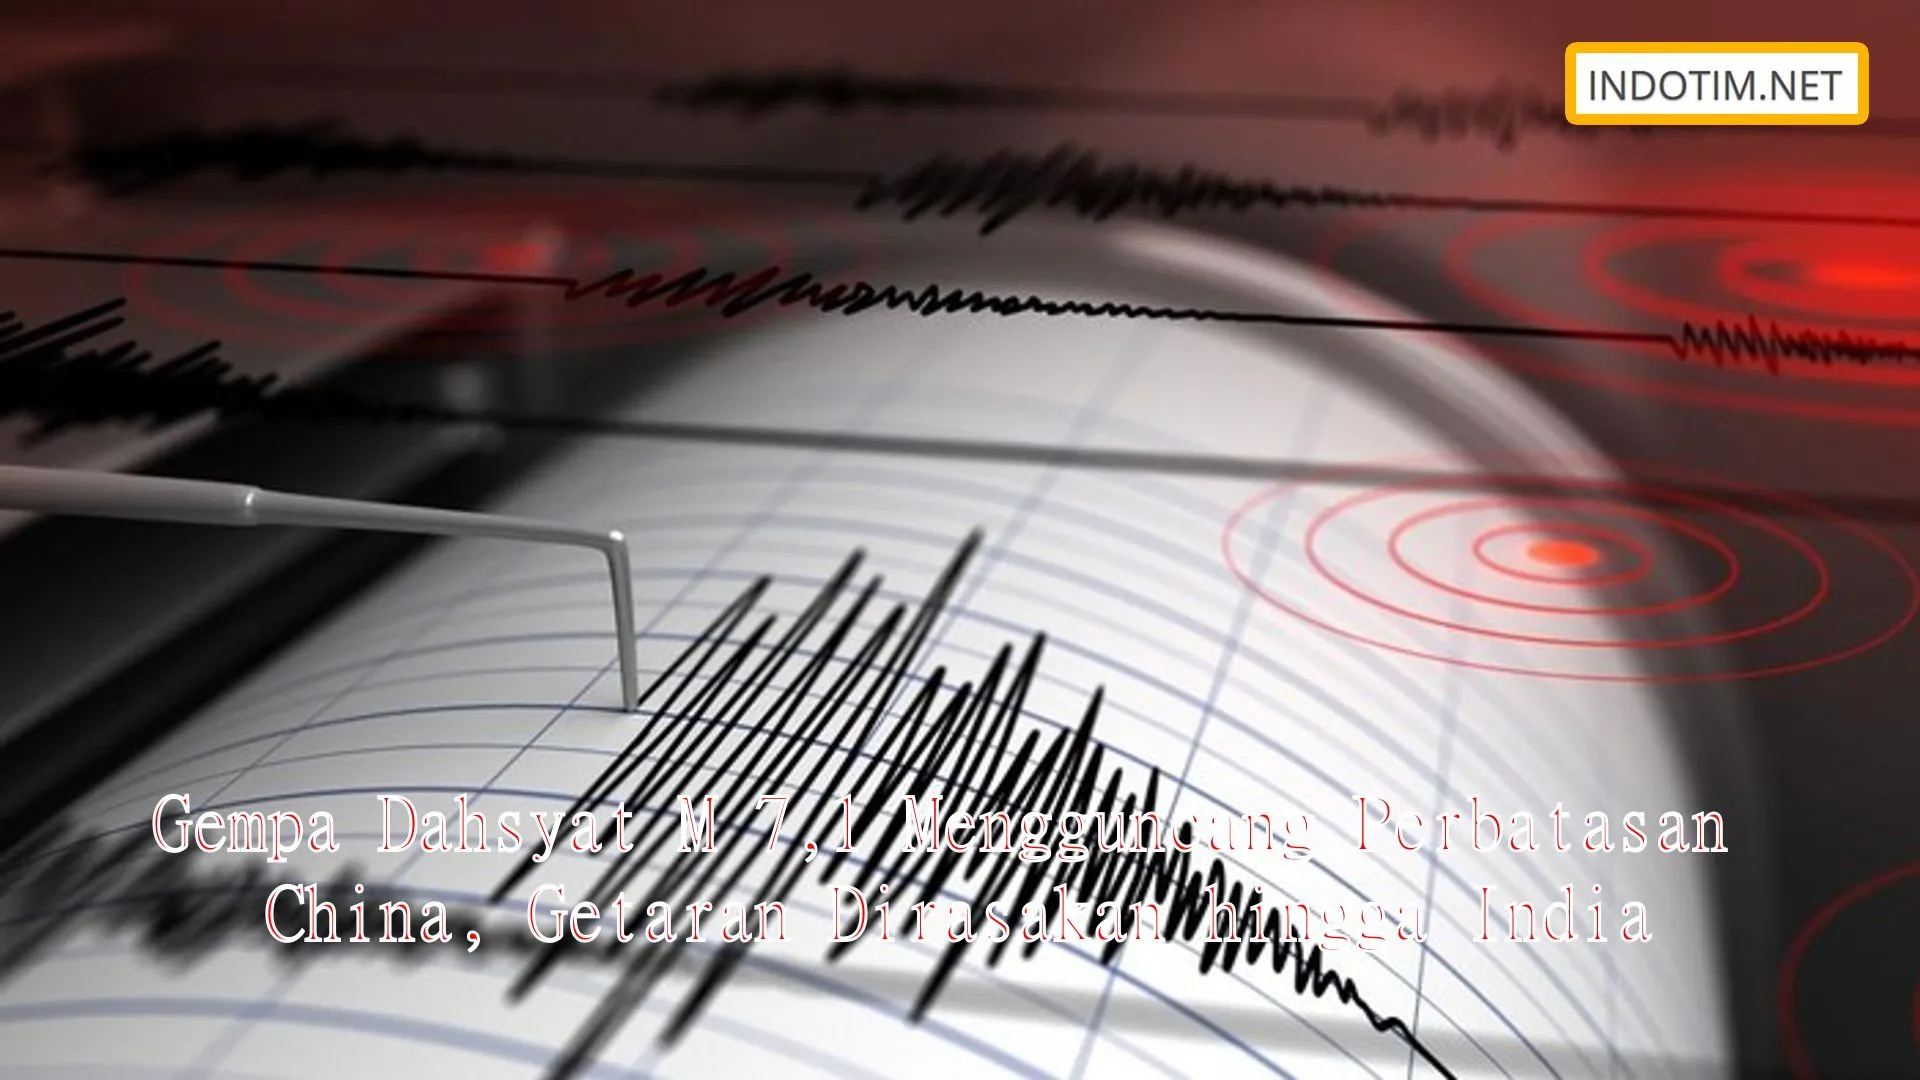 Gempa Dahsyat M 7,1 Mengguncang Perbatasan China, Getaran Dirasakan hingga India